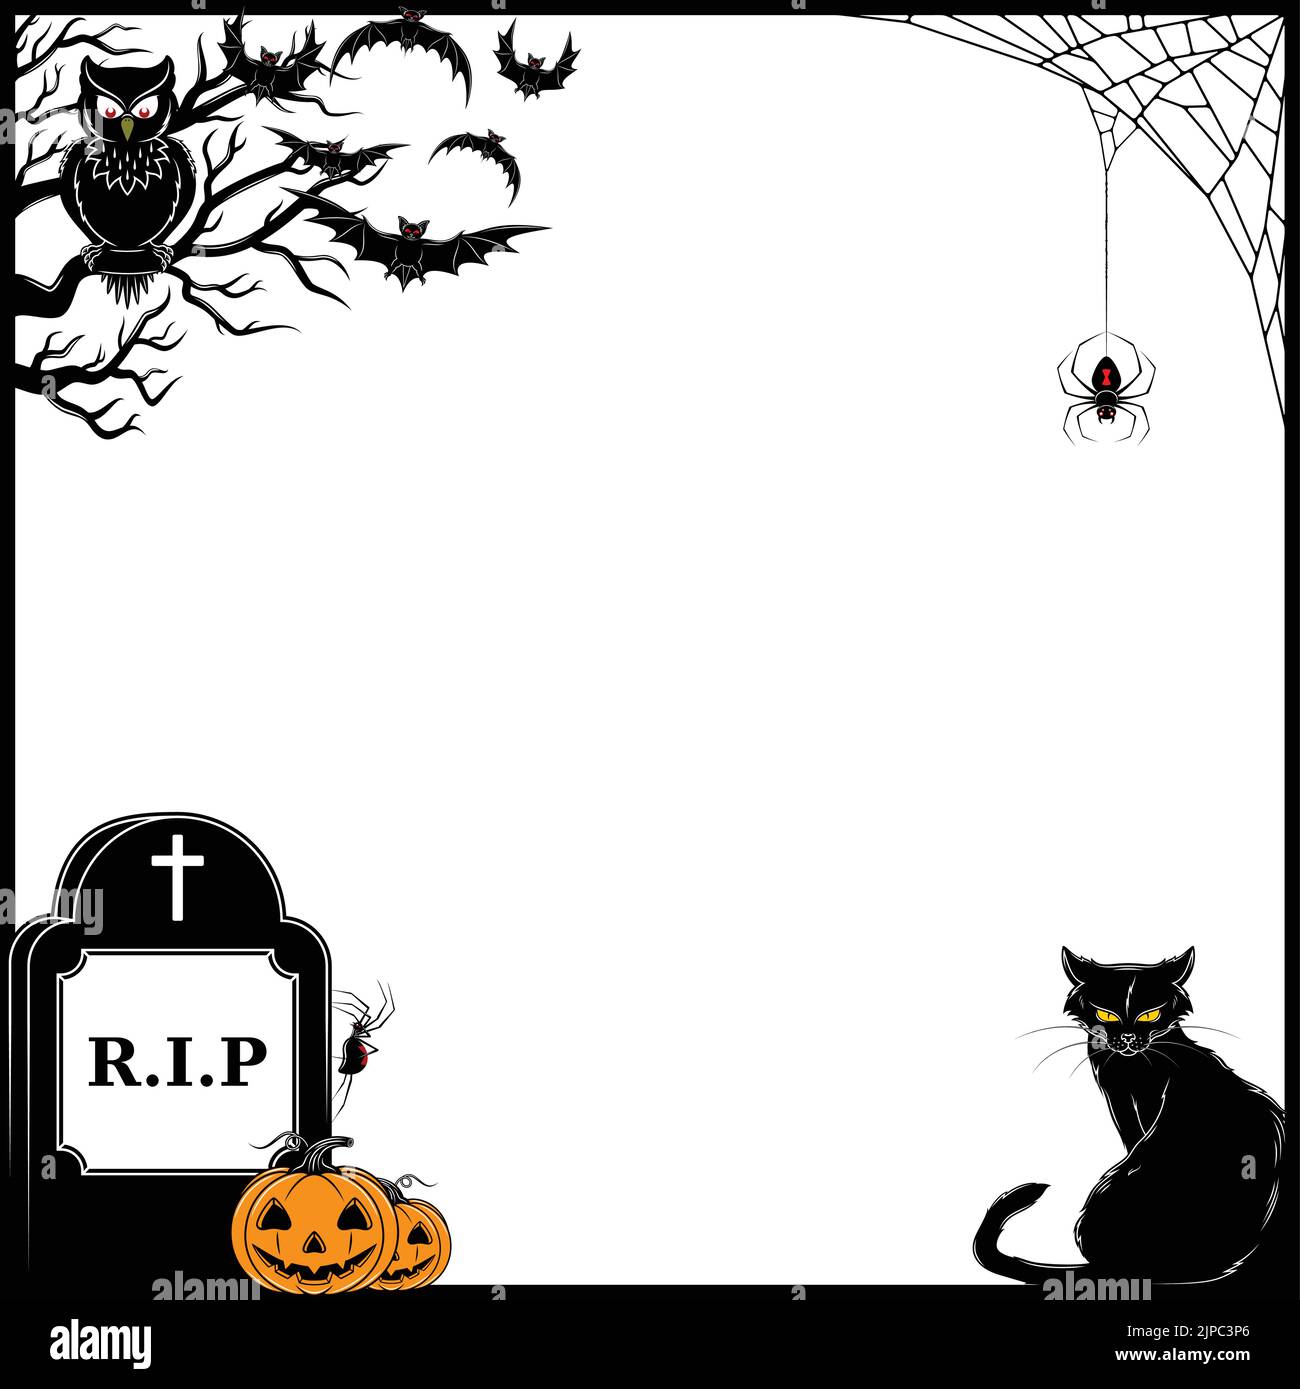 Motif vectoriel de cadre pour avec des éléments caractéristiques de Halloween avec des battes, araignées et crânes Illustration de Vecteur